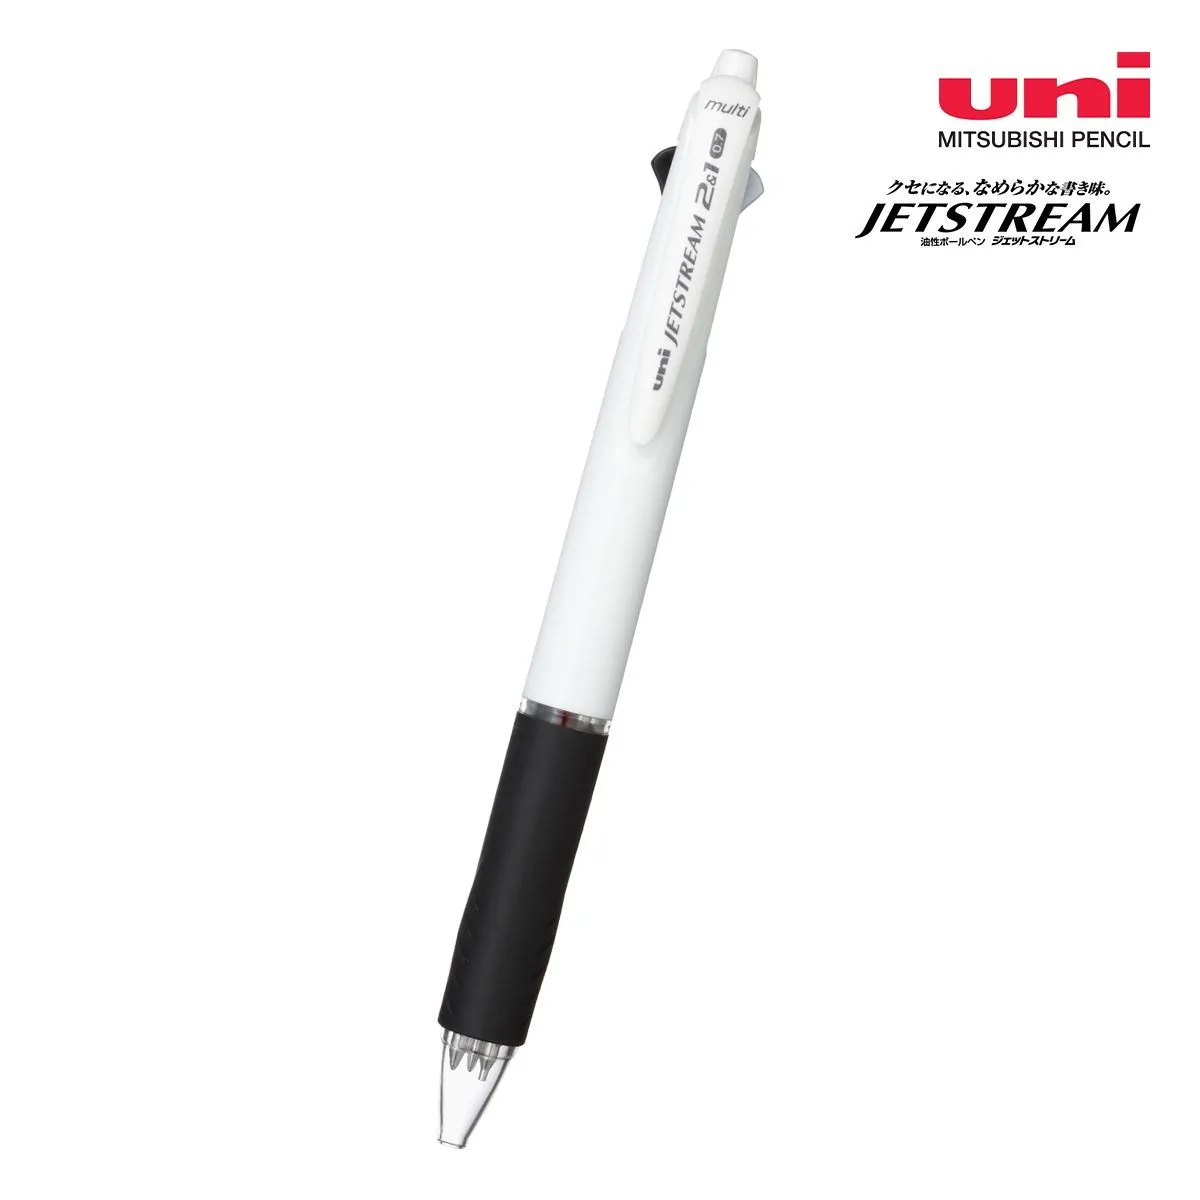 三菱鉛筆 ジェットストリーム 2&1多機能ペン 白軸 0.7mm【多機能ペン / パッド印刷】 画像1